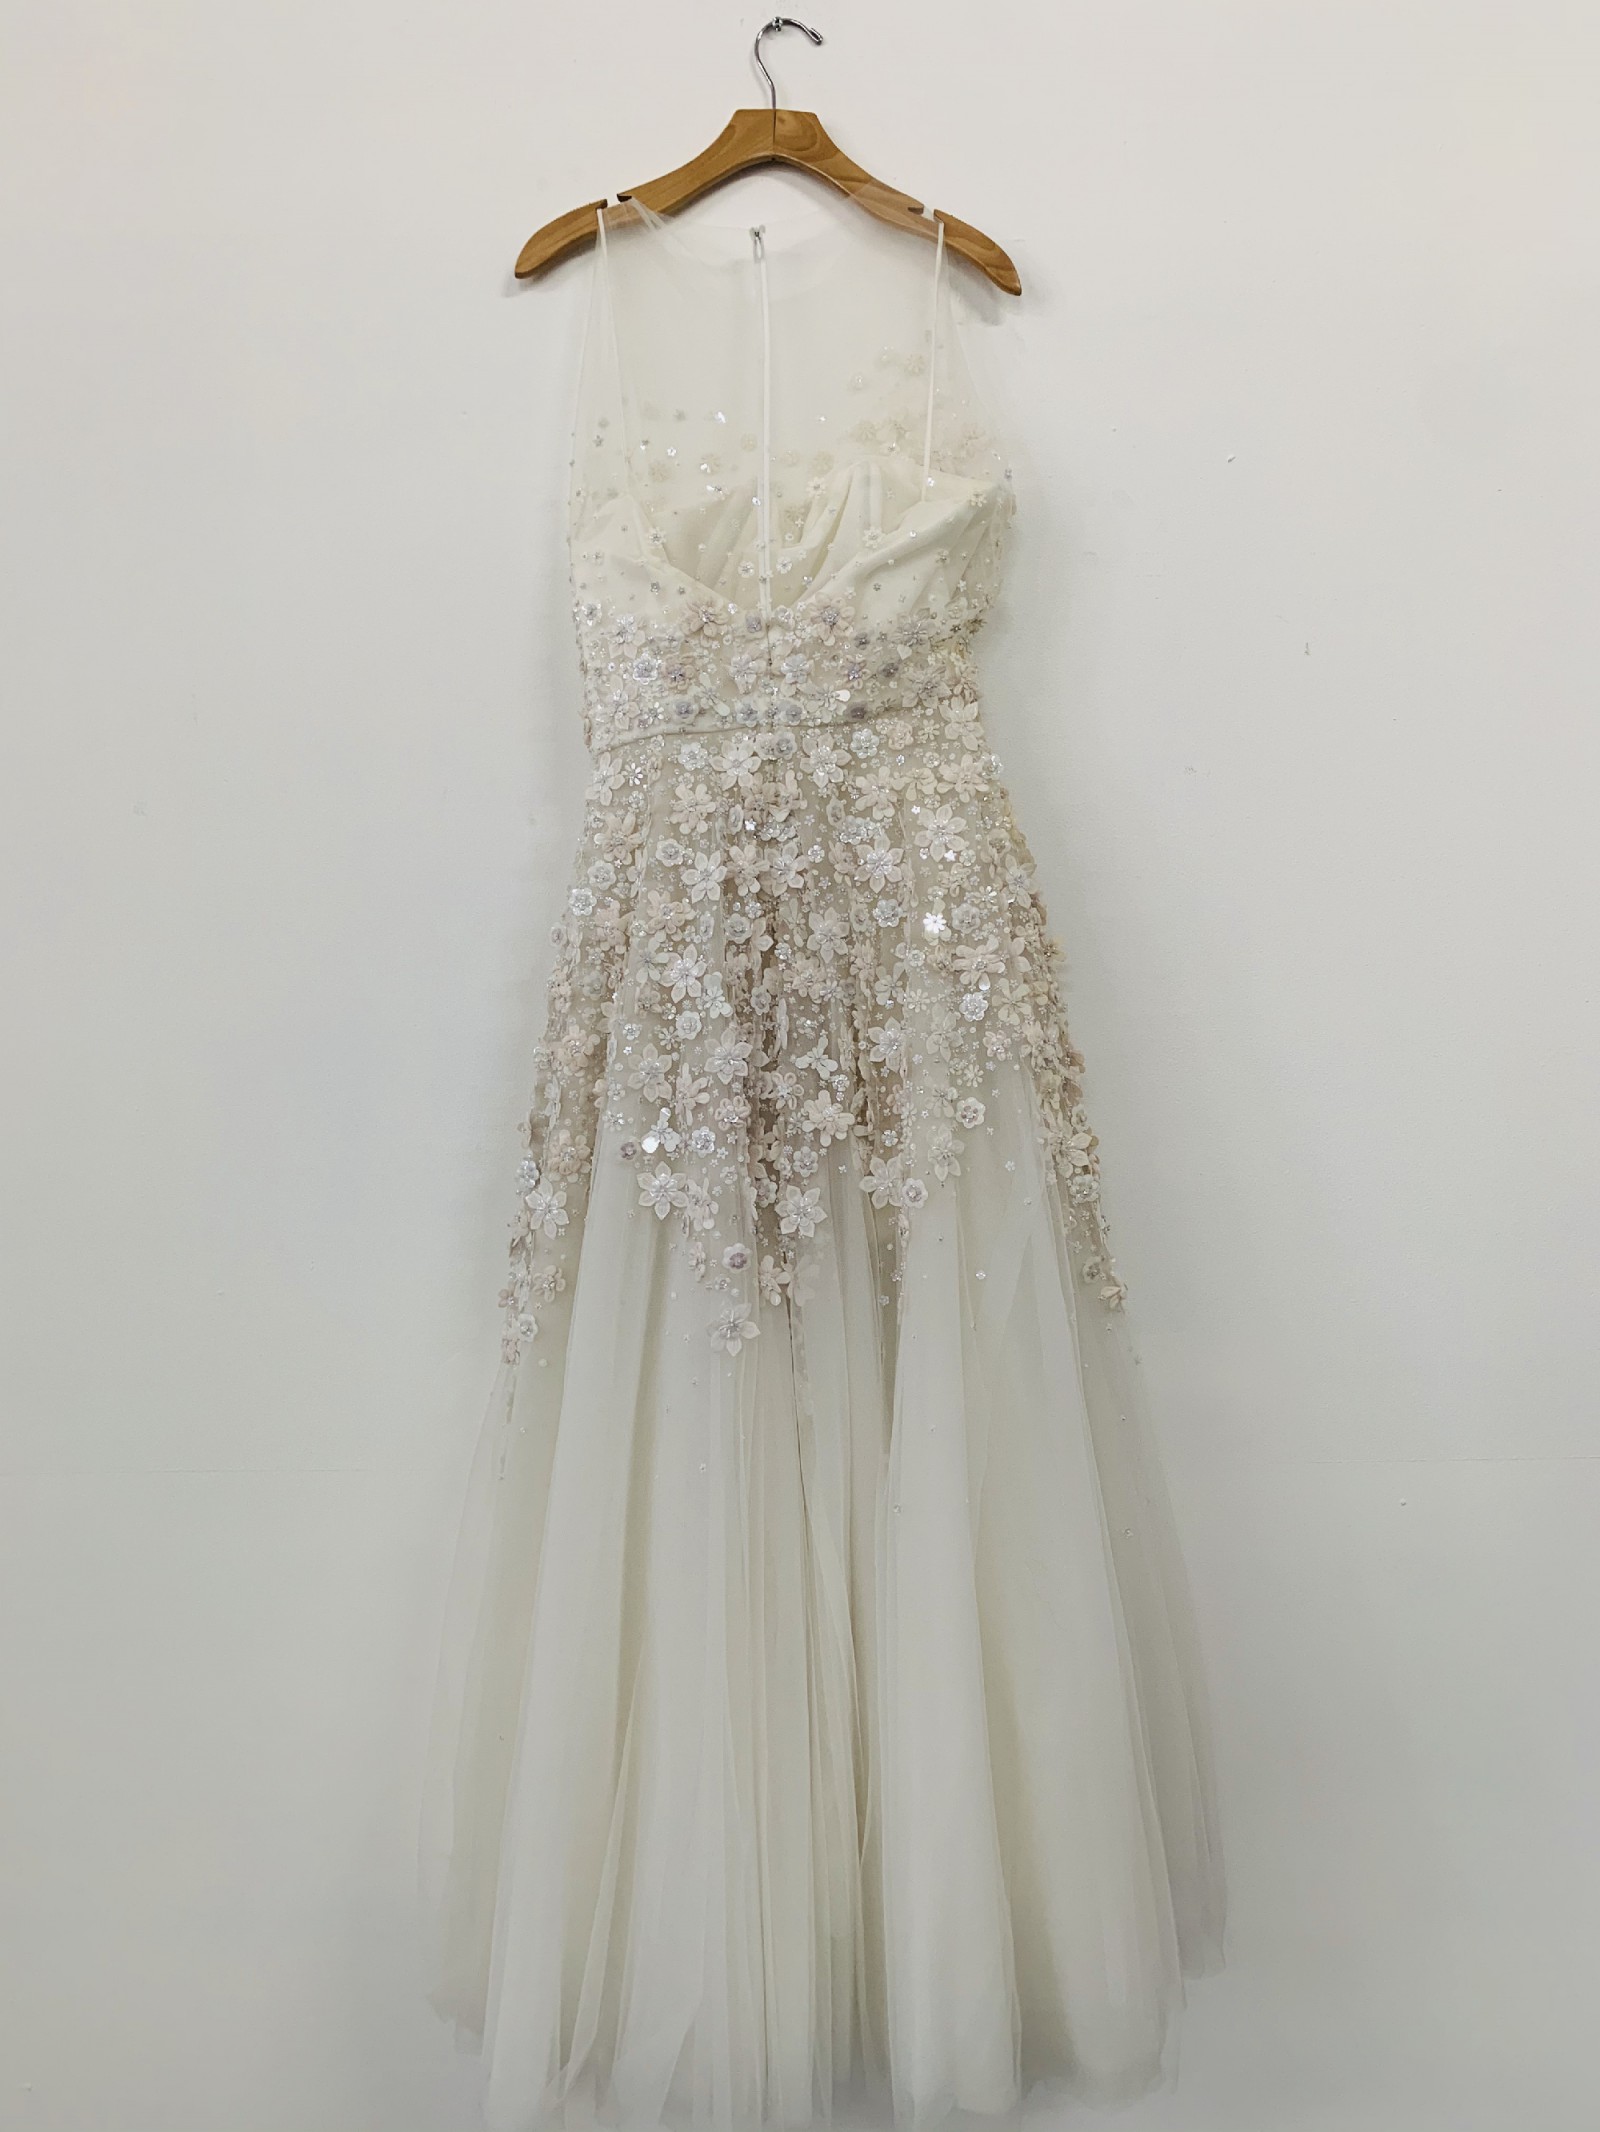 Randi Rahm Jill Sample Wedding Dress Save 95% - Stillwhite